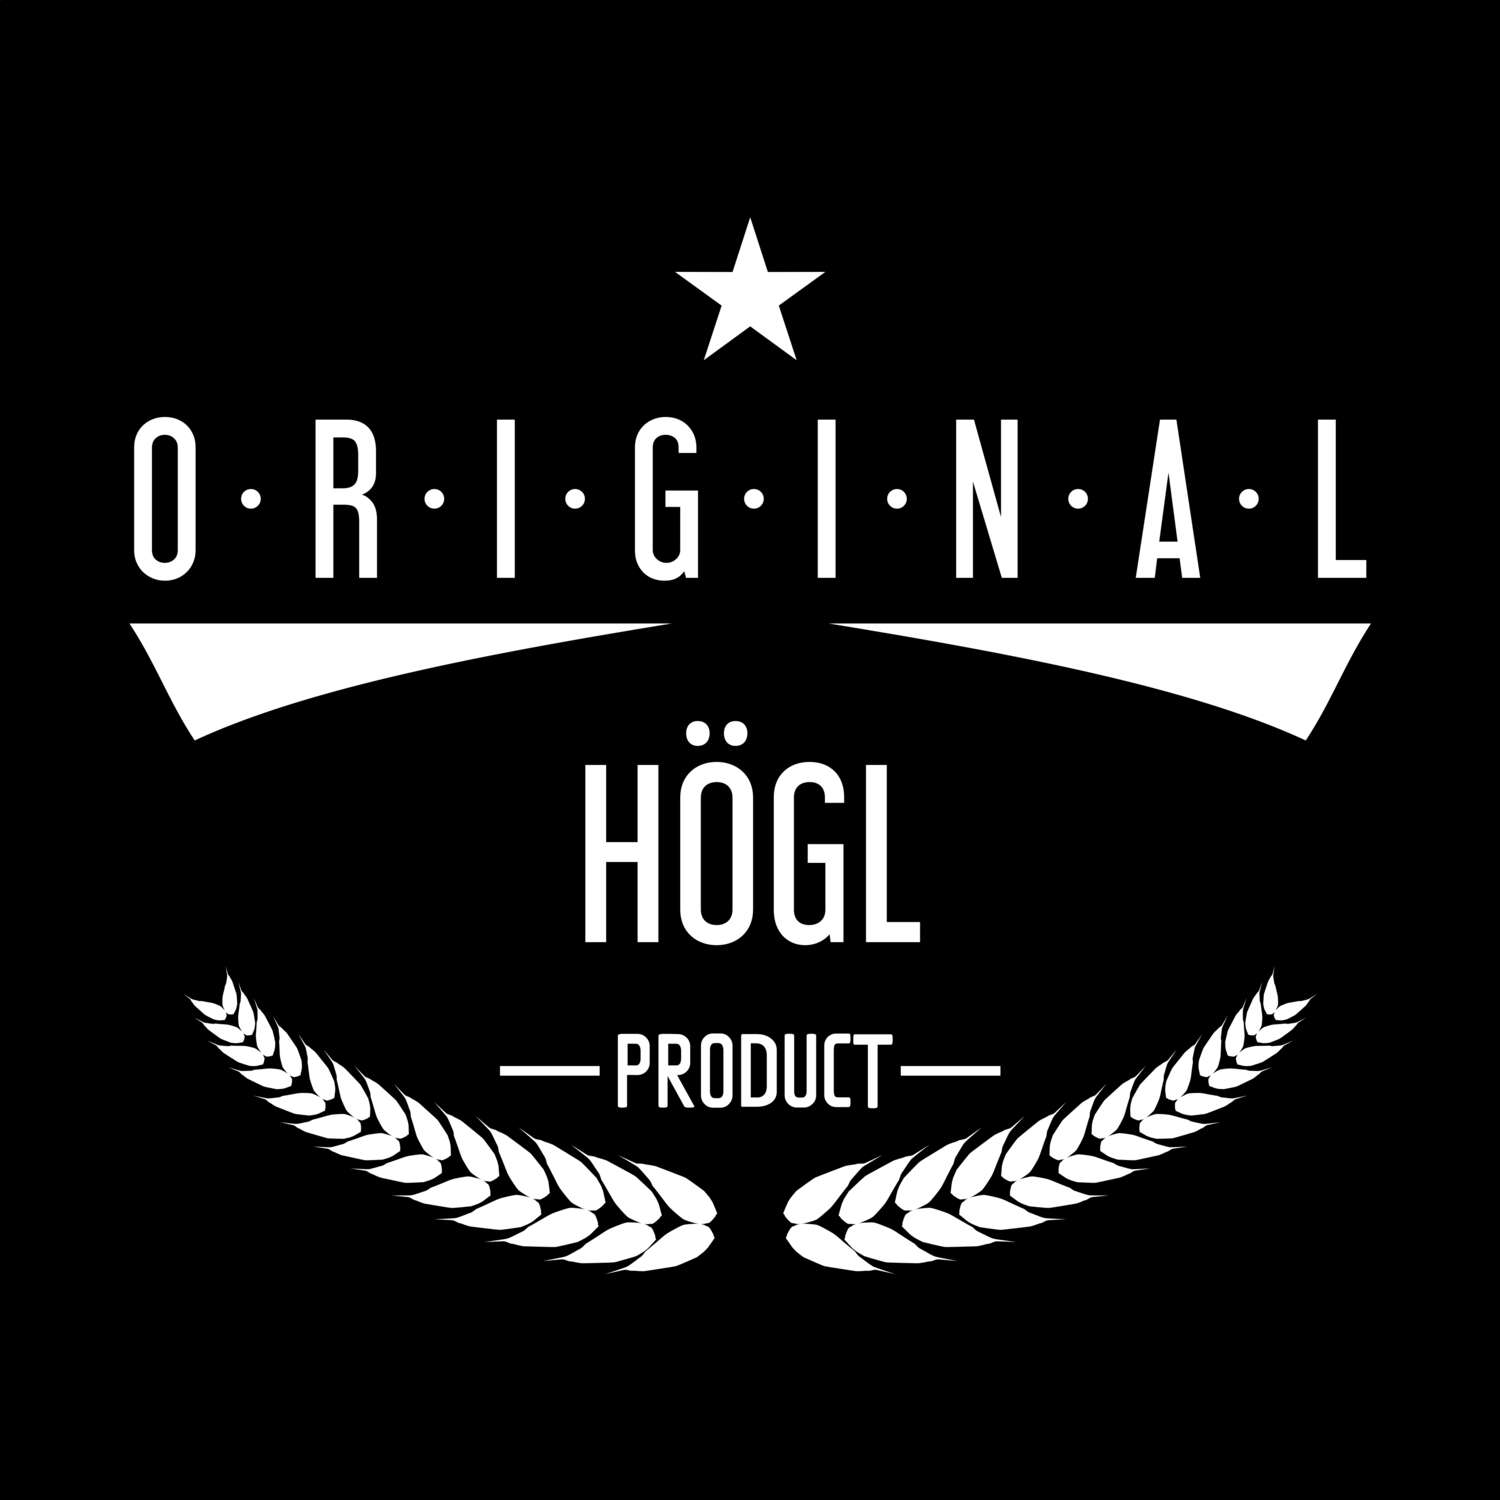 Högl T-Shirt »Original Product«